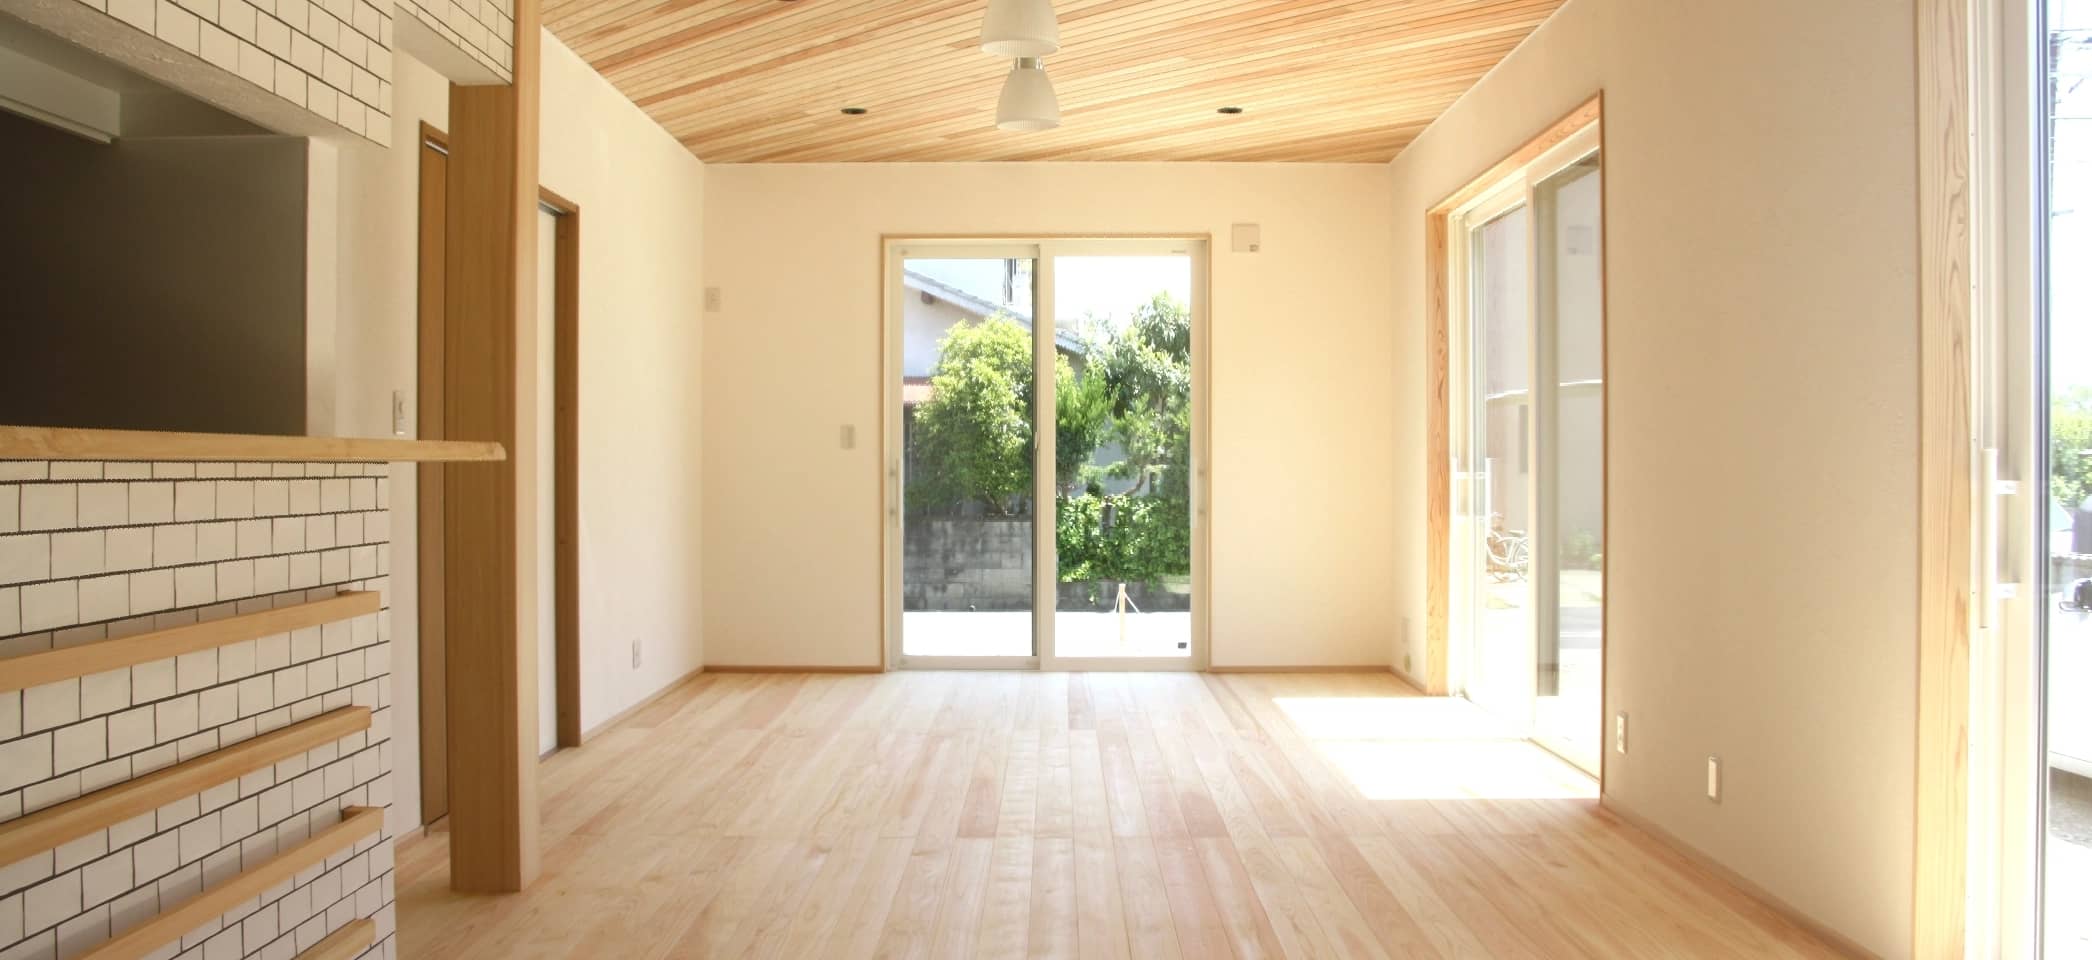 やさしい木の枠や床、棚が印象的な部屋に窓から光が入っている風景。外には木が見える。